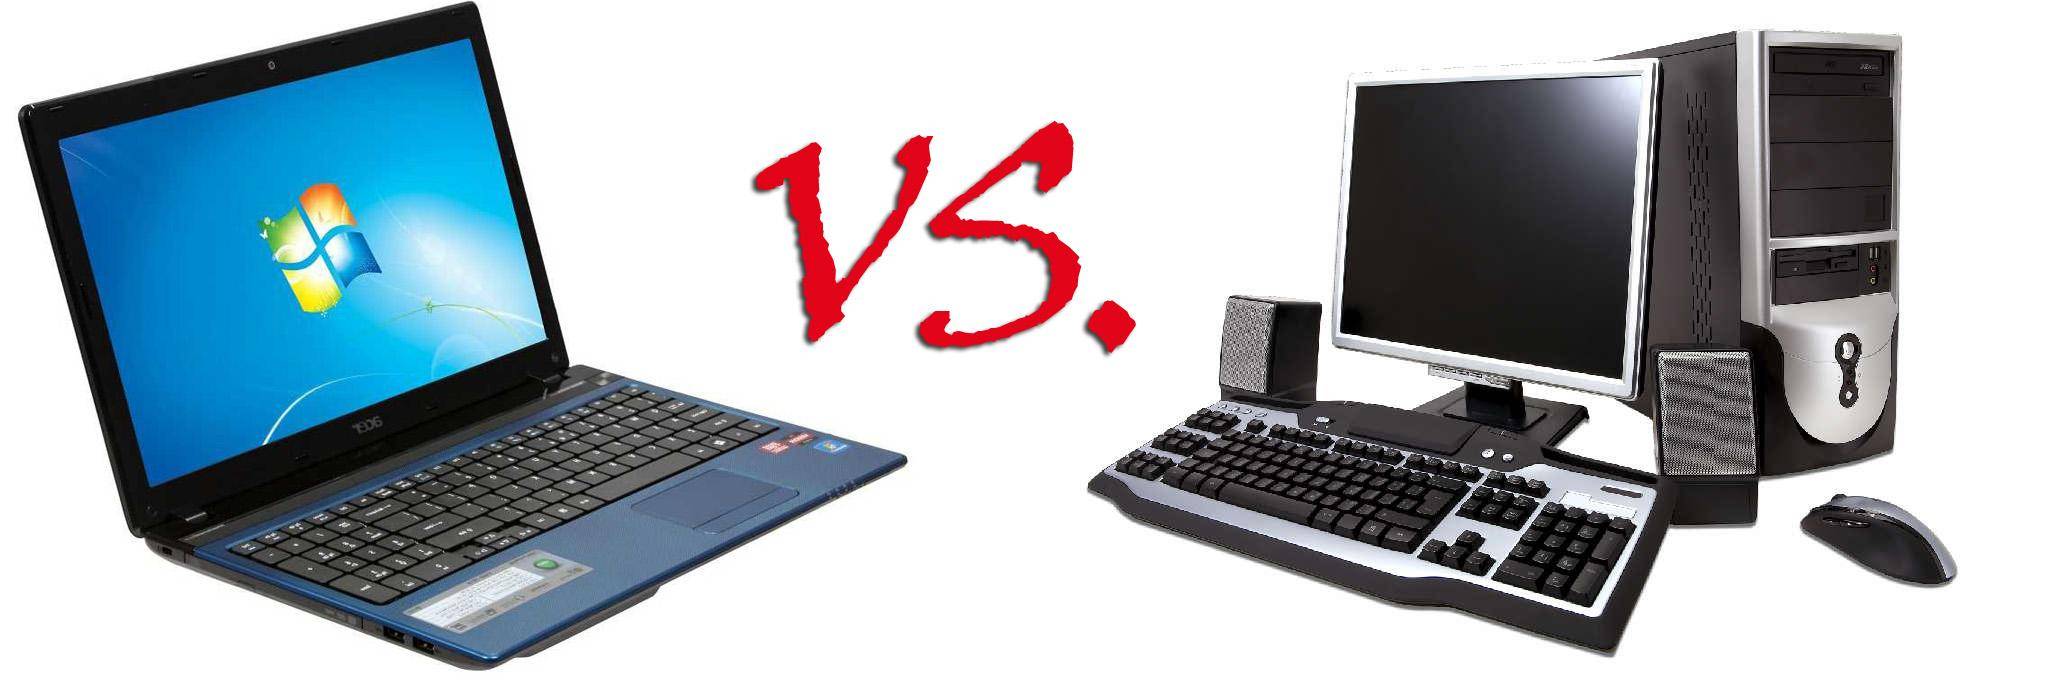 Что лучше - компьютер или ноутбук: обзор, сравнение, выбор :: syl.ru